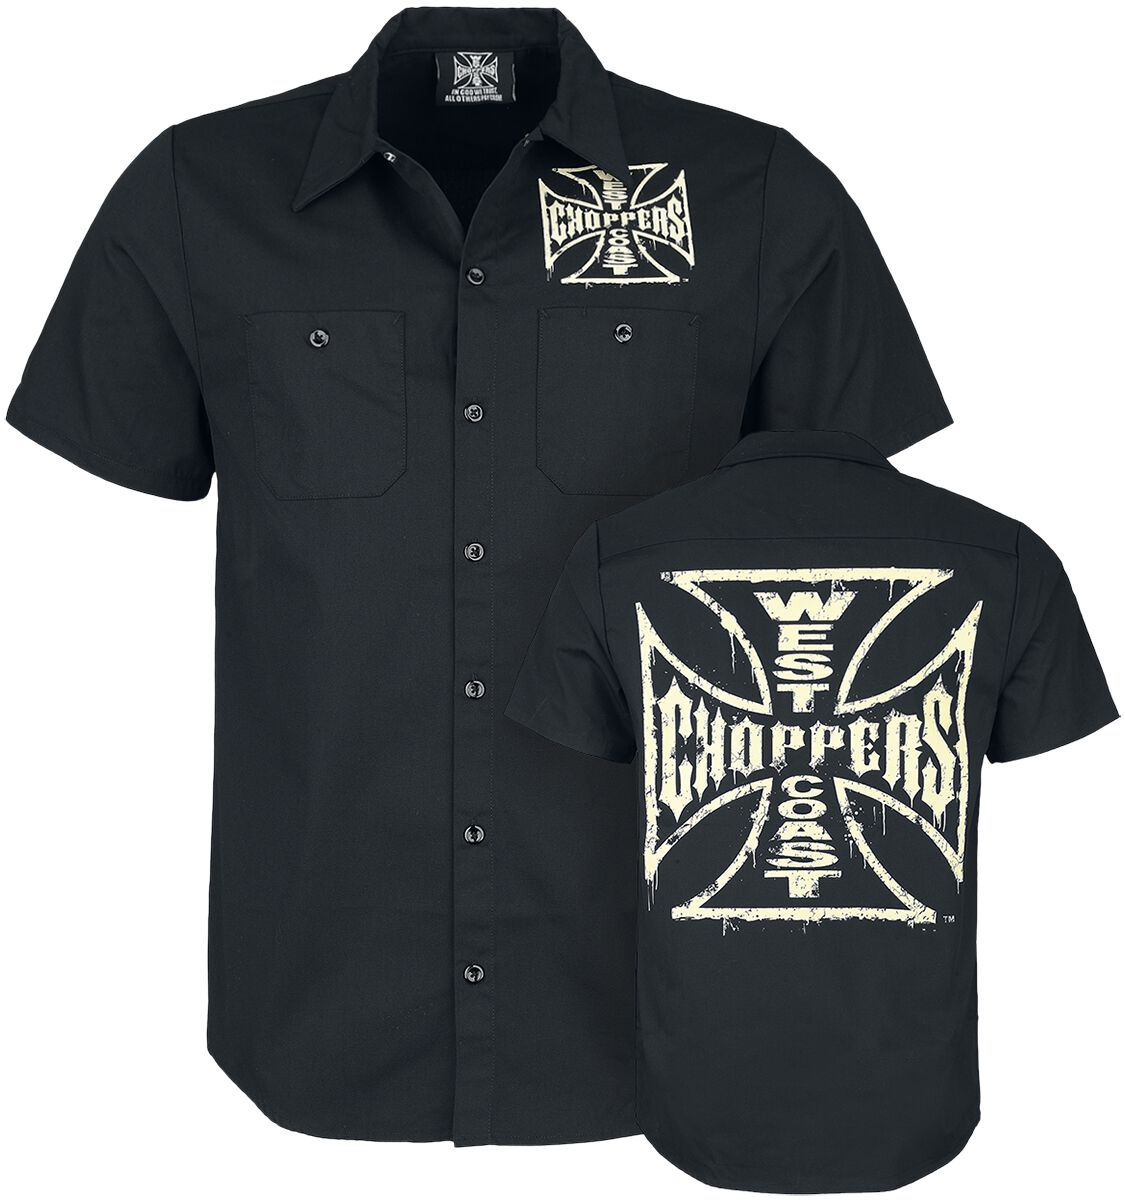 Image of Camicia Maniche Corte di West Coast Choppers - Distressed OG logo - S a XXL - Uomo - nero